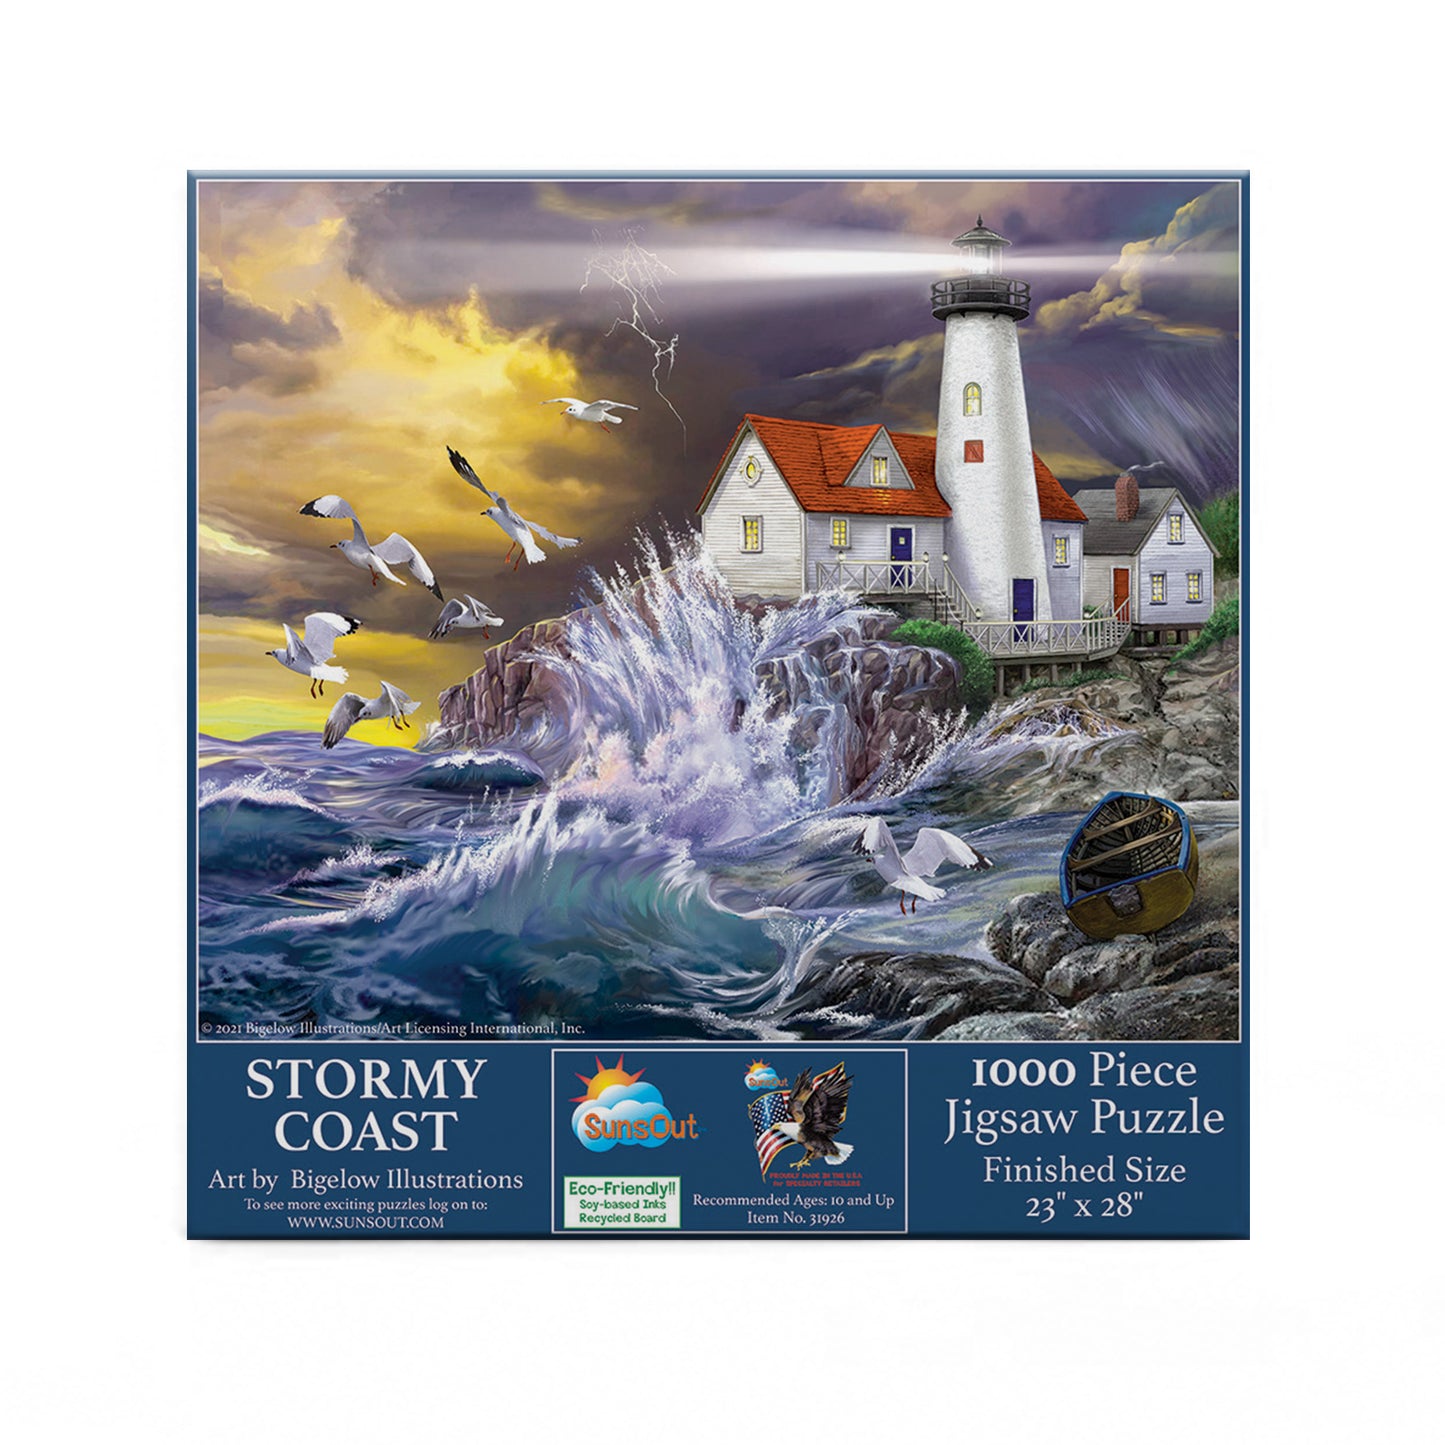 Stormy Coast - 1000 Piece Jigsaw Puzzle